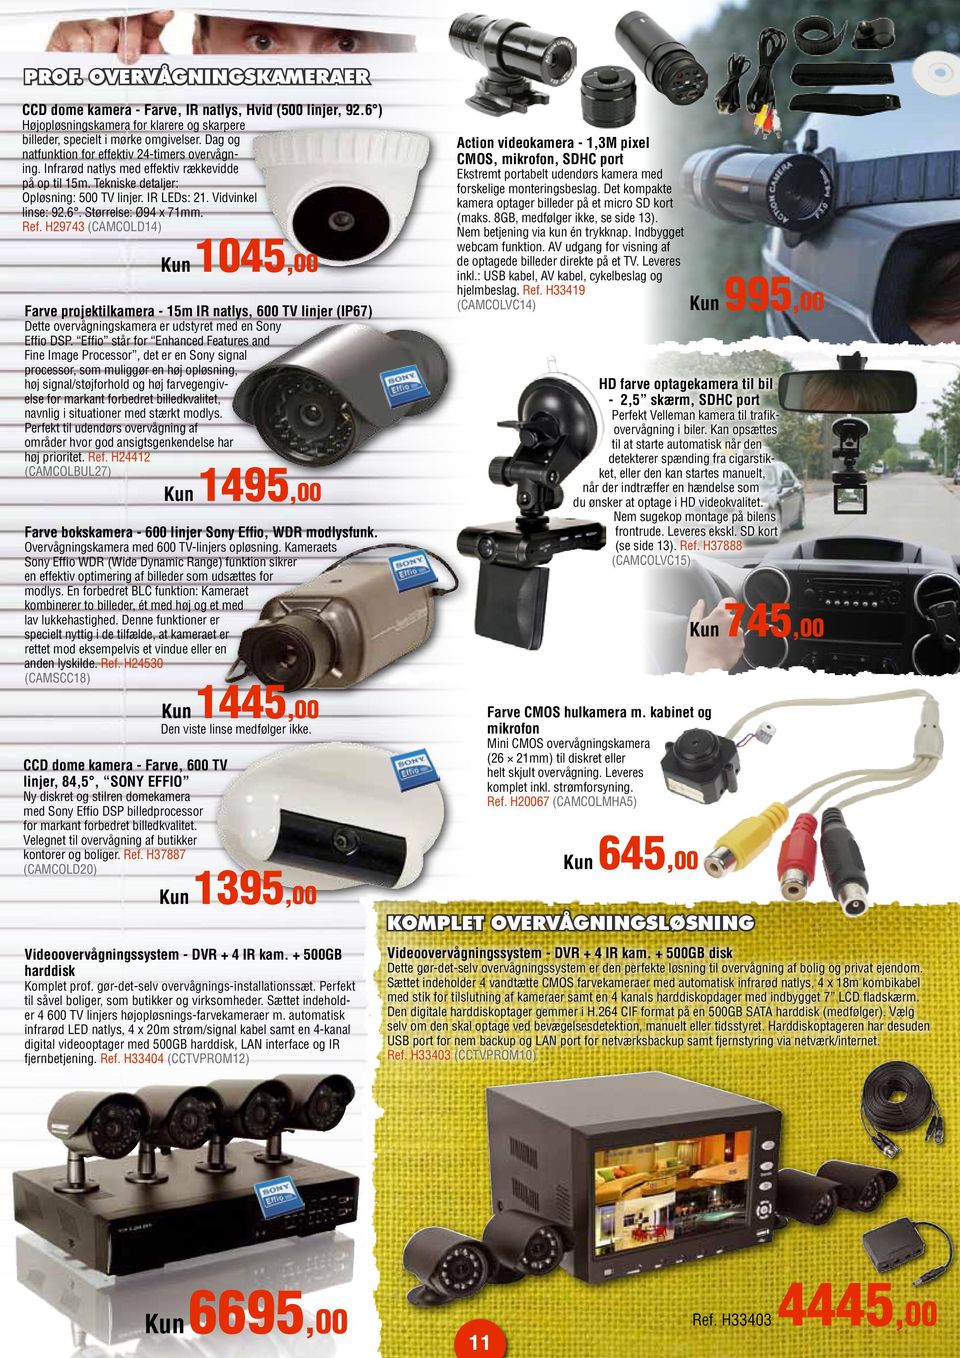 Størrelse: Ø94 x 71mm. Ref. H29743 (CAMCOLD14) Farve projektilkamera - 15m IR natlys, 600 TV linjer (IP67) Dette overvågningskamera er udstyret med en Sony Effio DSP.